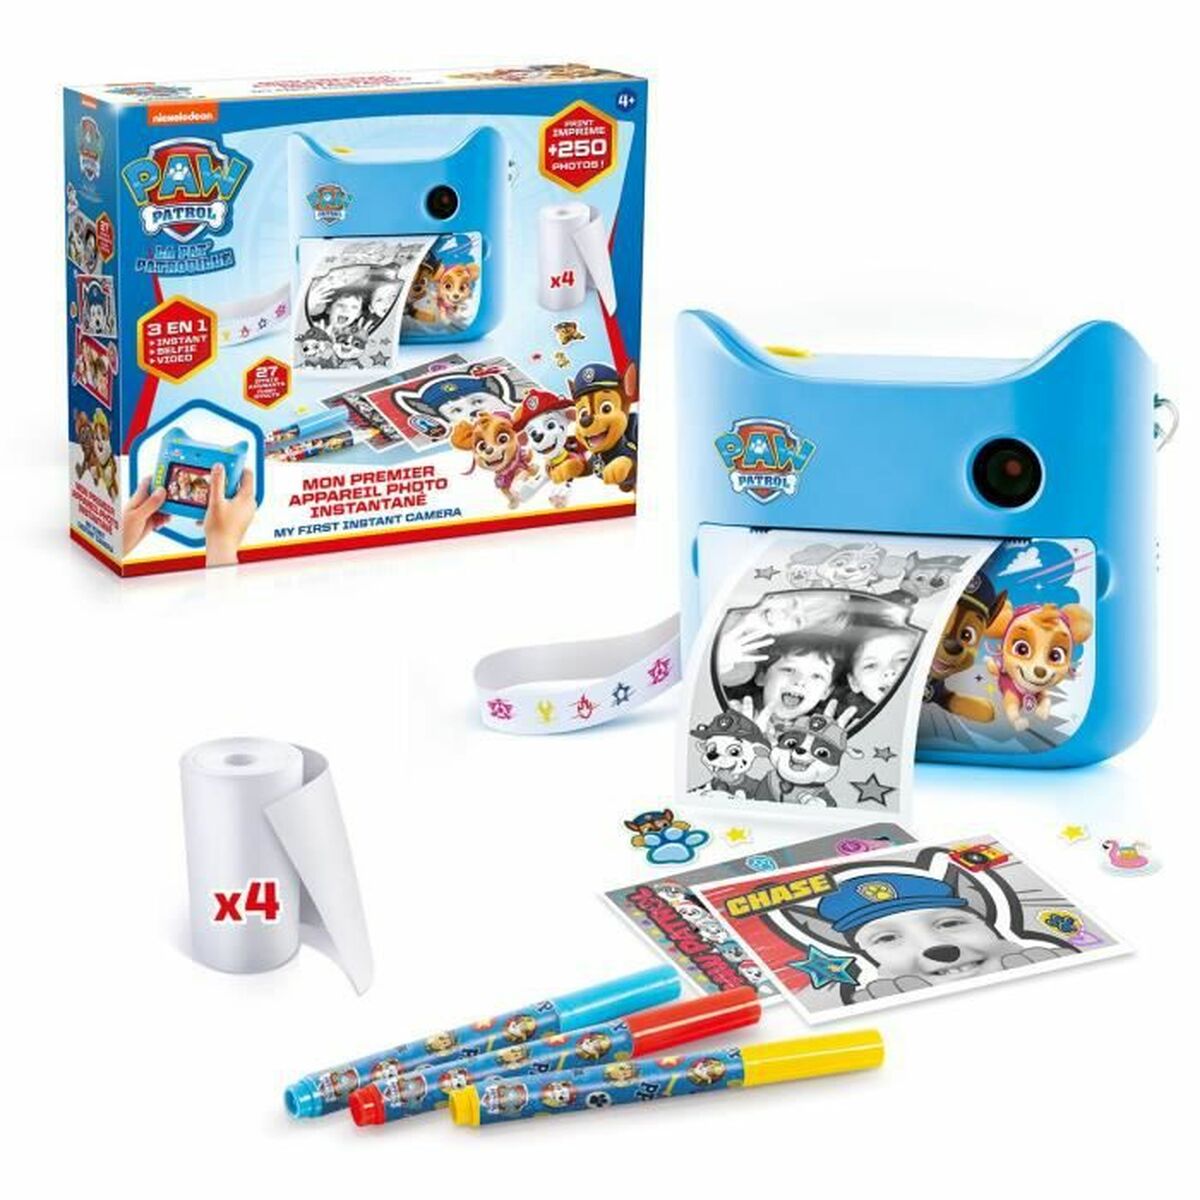 Fotocamera Digitale per Bambini Canal Toys Azzurro - Disponibile in 3-4 giorni lavorativi